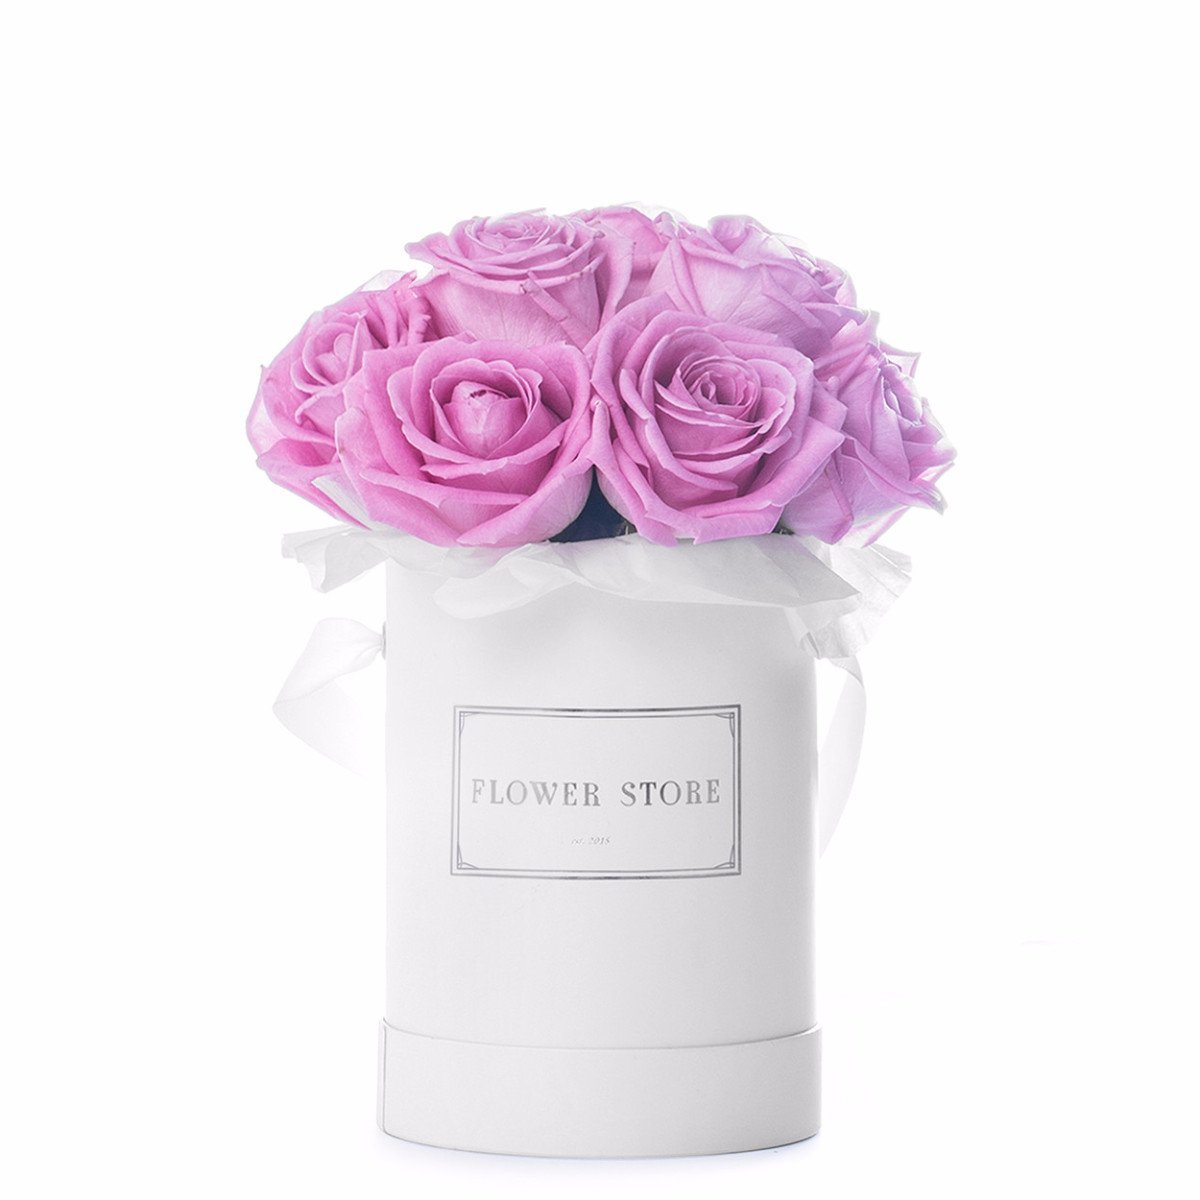 Маленькая белая коробочка с розовыми розами - живыми цветами.